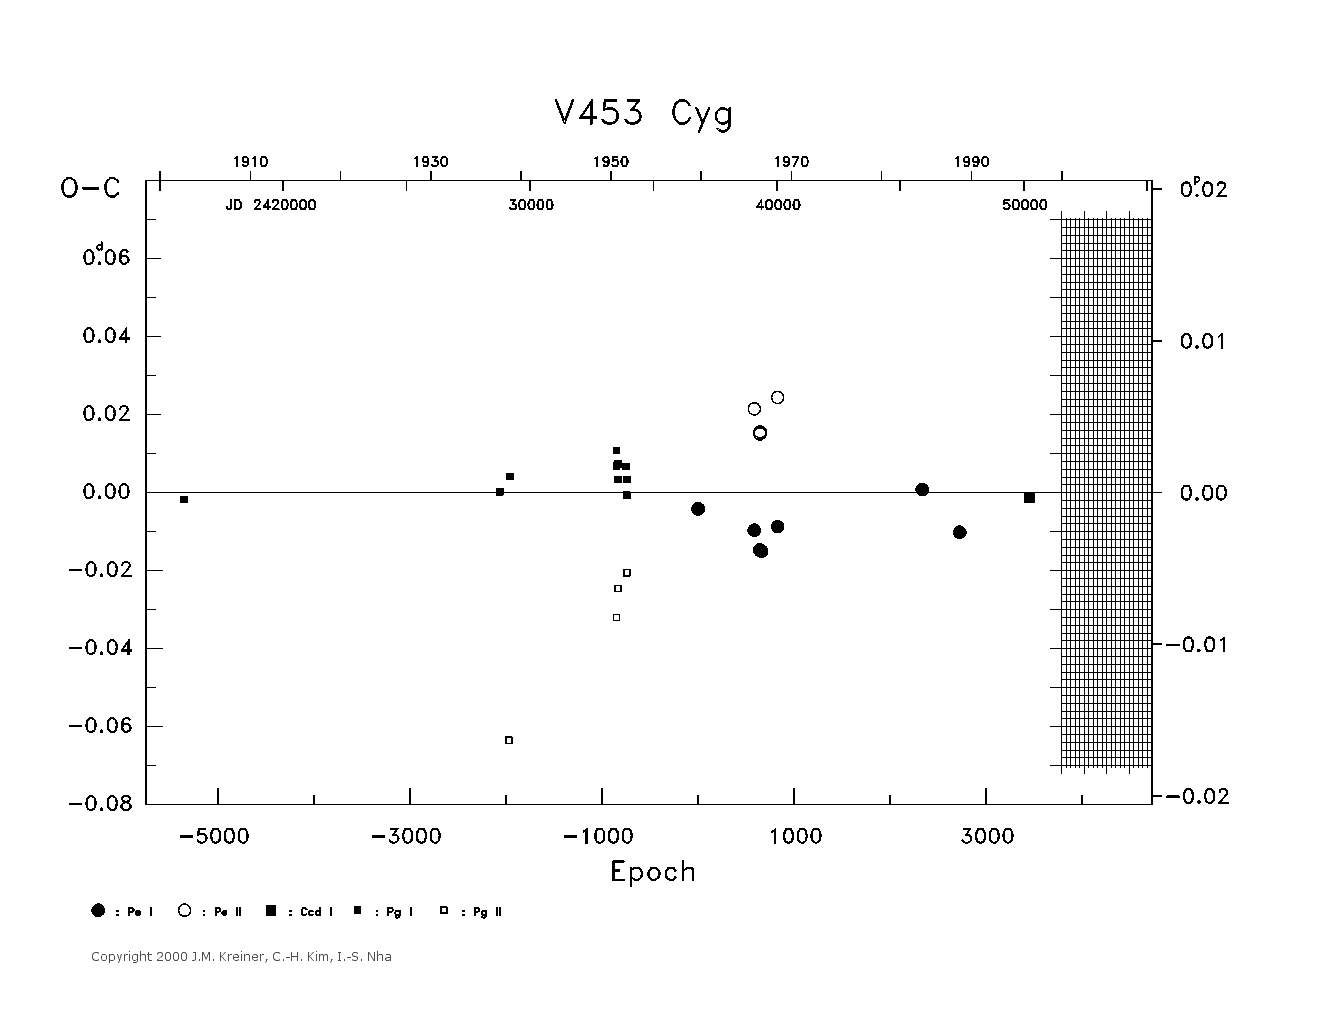 [IMAGE: large V453 CYG O-C diagram]